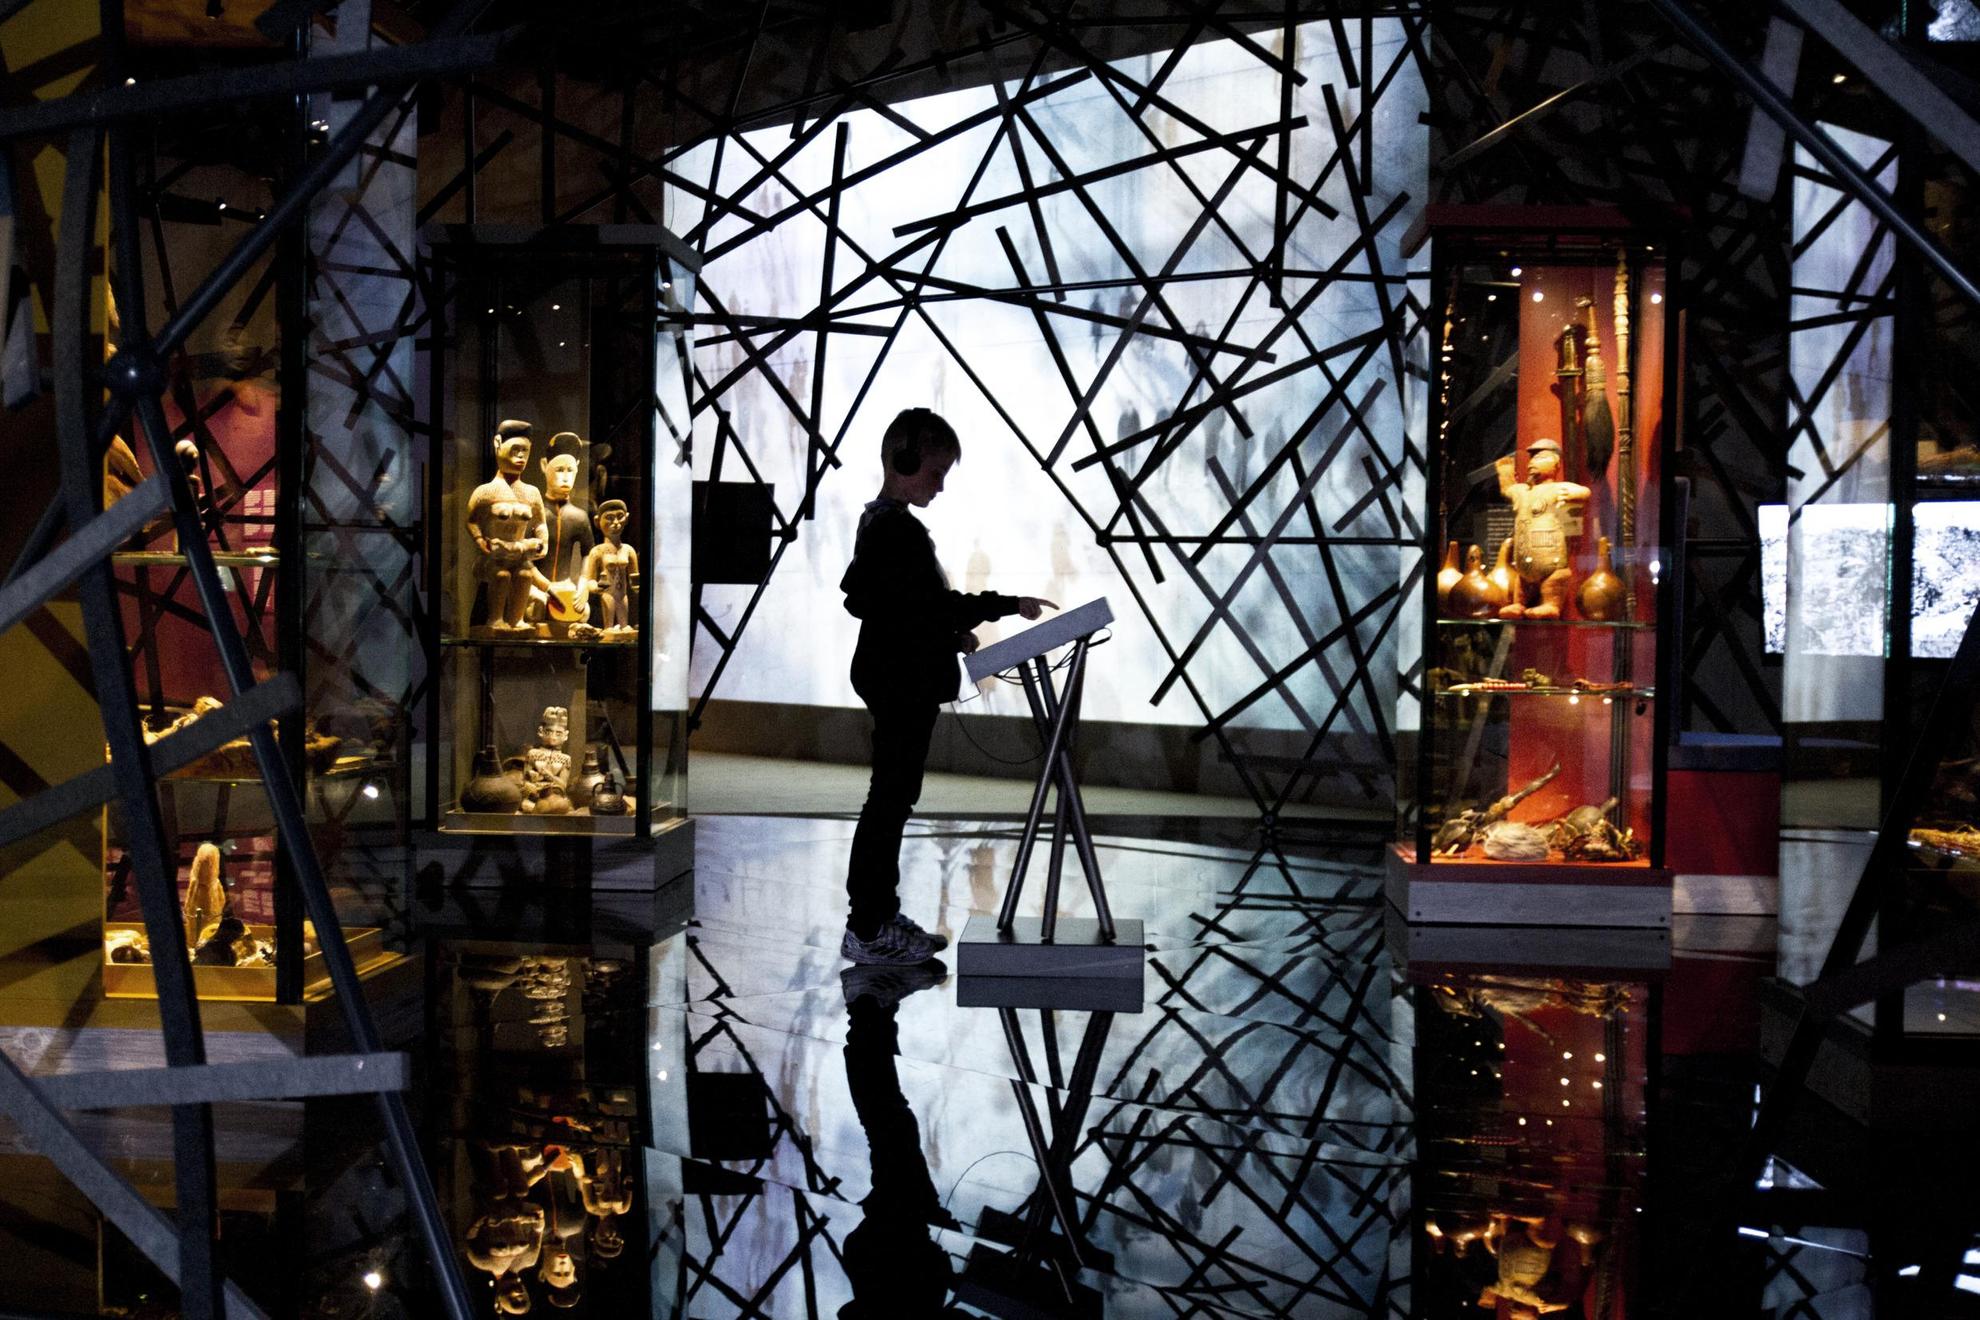 Een kind staat voor een display in het midden van een tentoonstellingsruimte. De ruimte is donker maar verlicht door een groot scherm achterin, omgeven door kruisende stokken, wat een dramatisch effect geeft met het silhouet van de bezoeker in het midden.